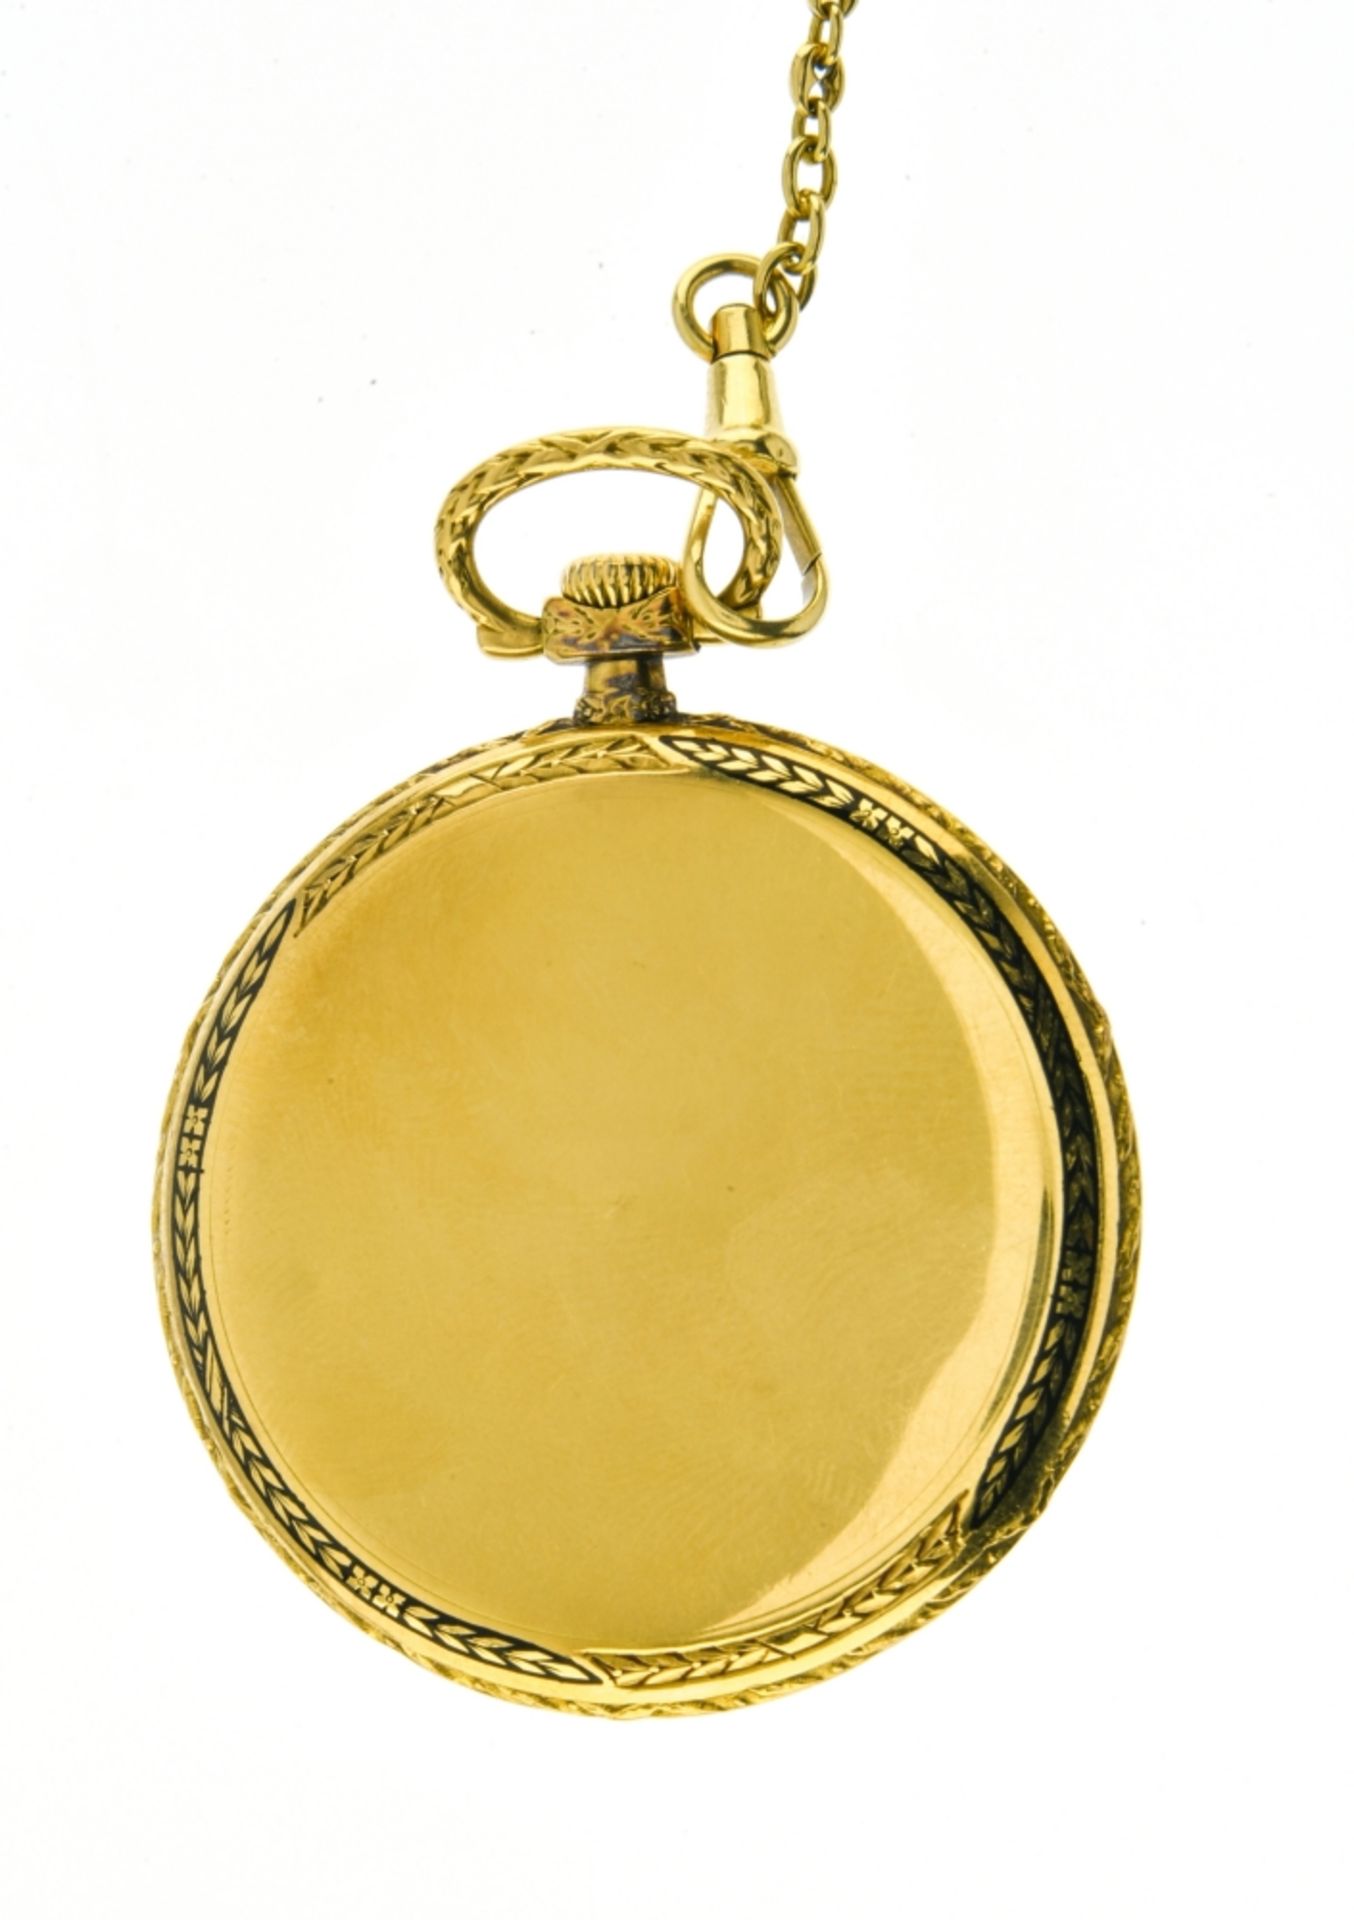 Vacheron Constantin Vacheron Constantin chronometer pocket watch and chain SWITZERLAND 18k gold - Bild 2 aus 3